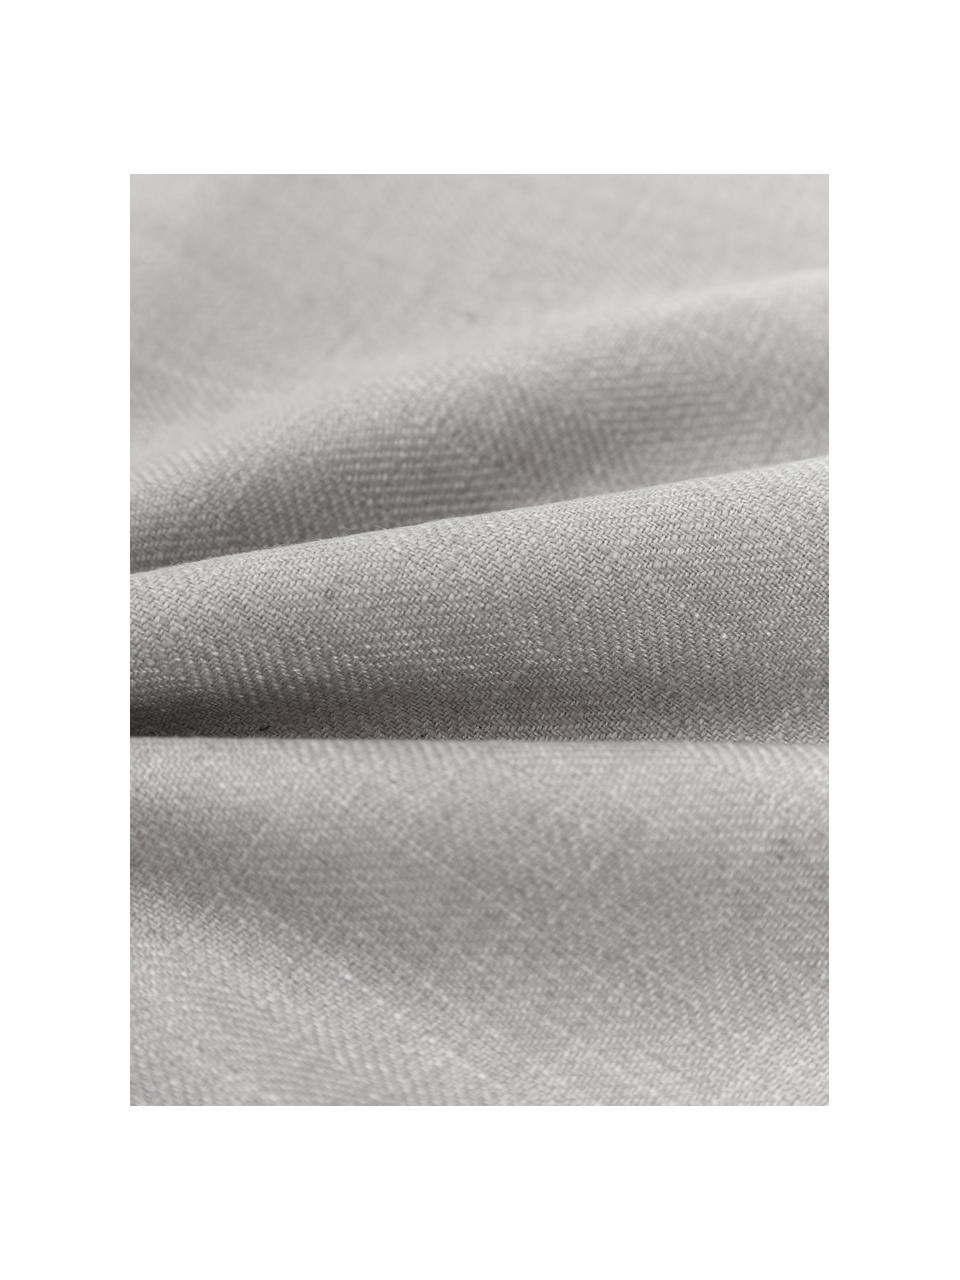 Kissenhülle Camille in Grau mit Rüschen, 60% Polyester, 25% Baumwolle, 15% Leinen, Grau, B 45 x L 45 cm